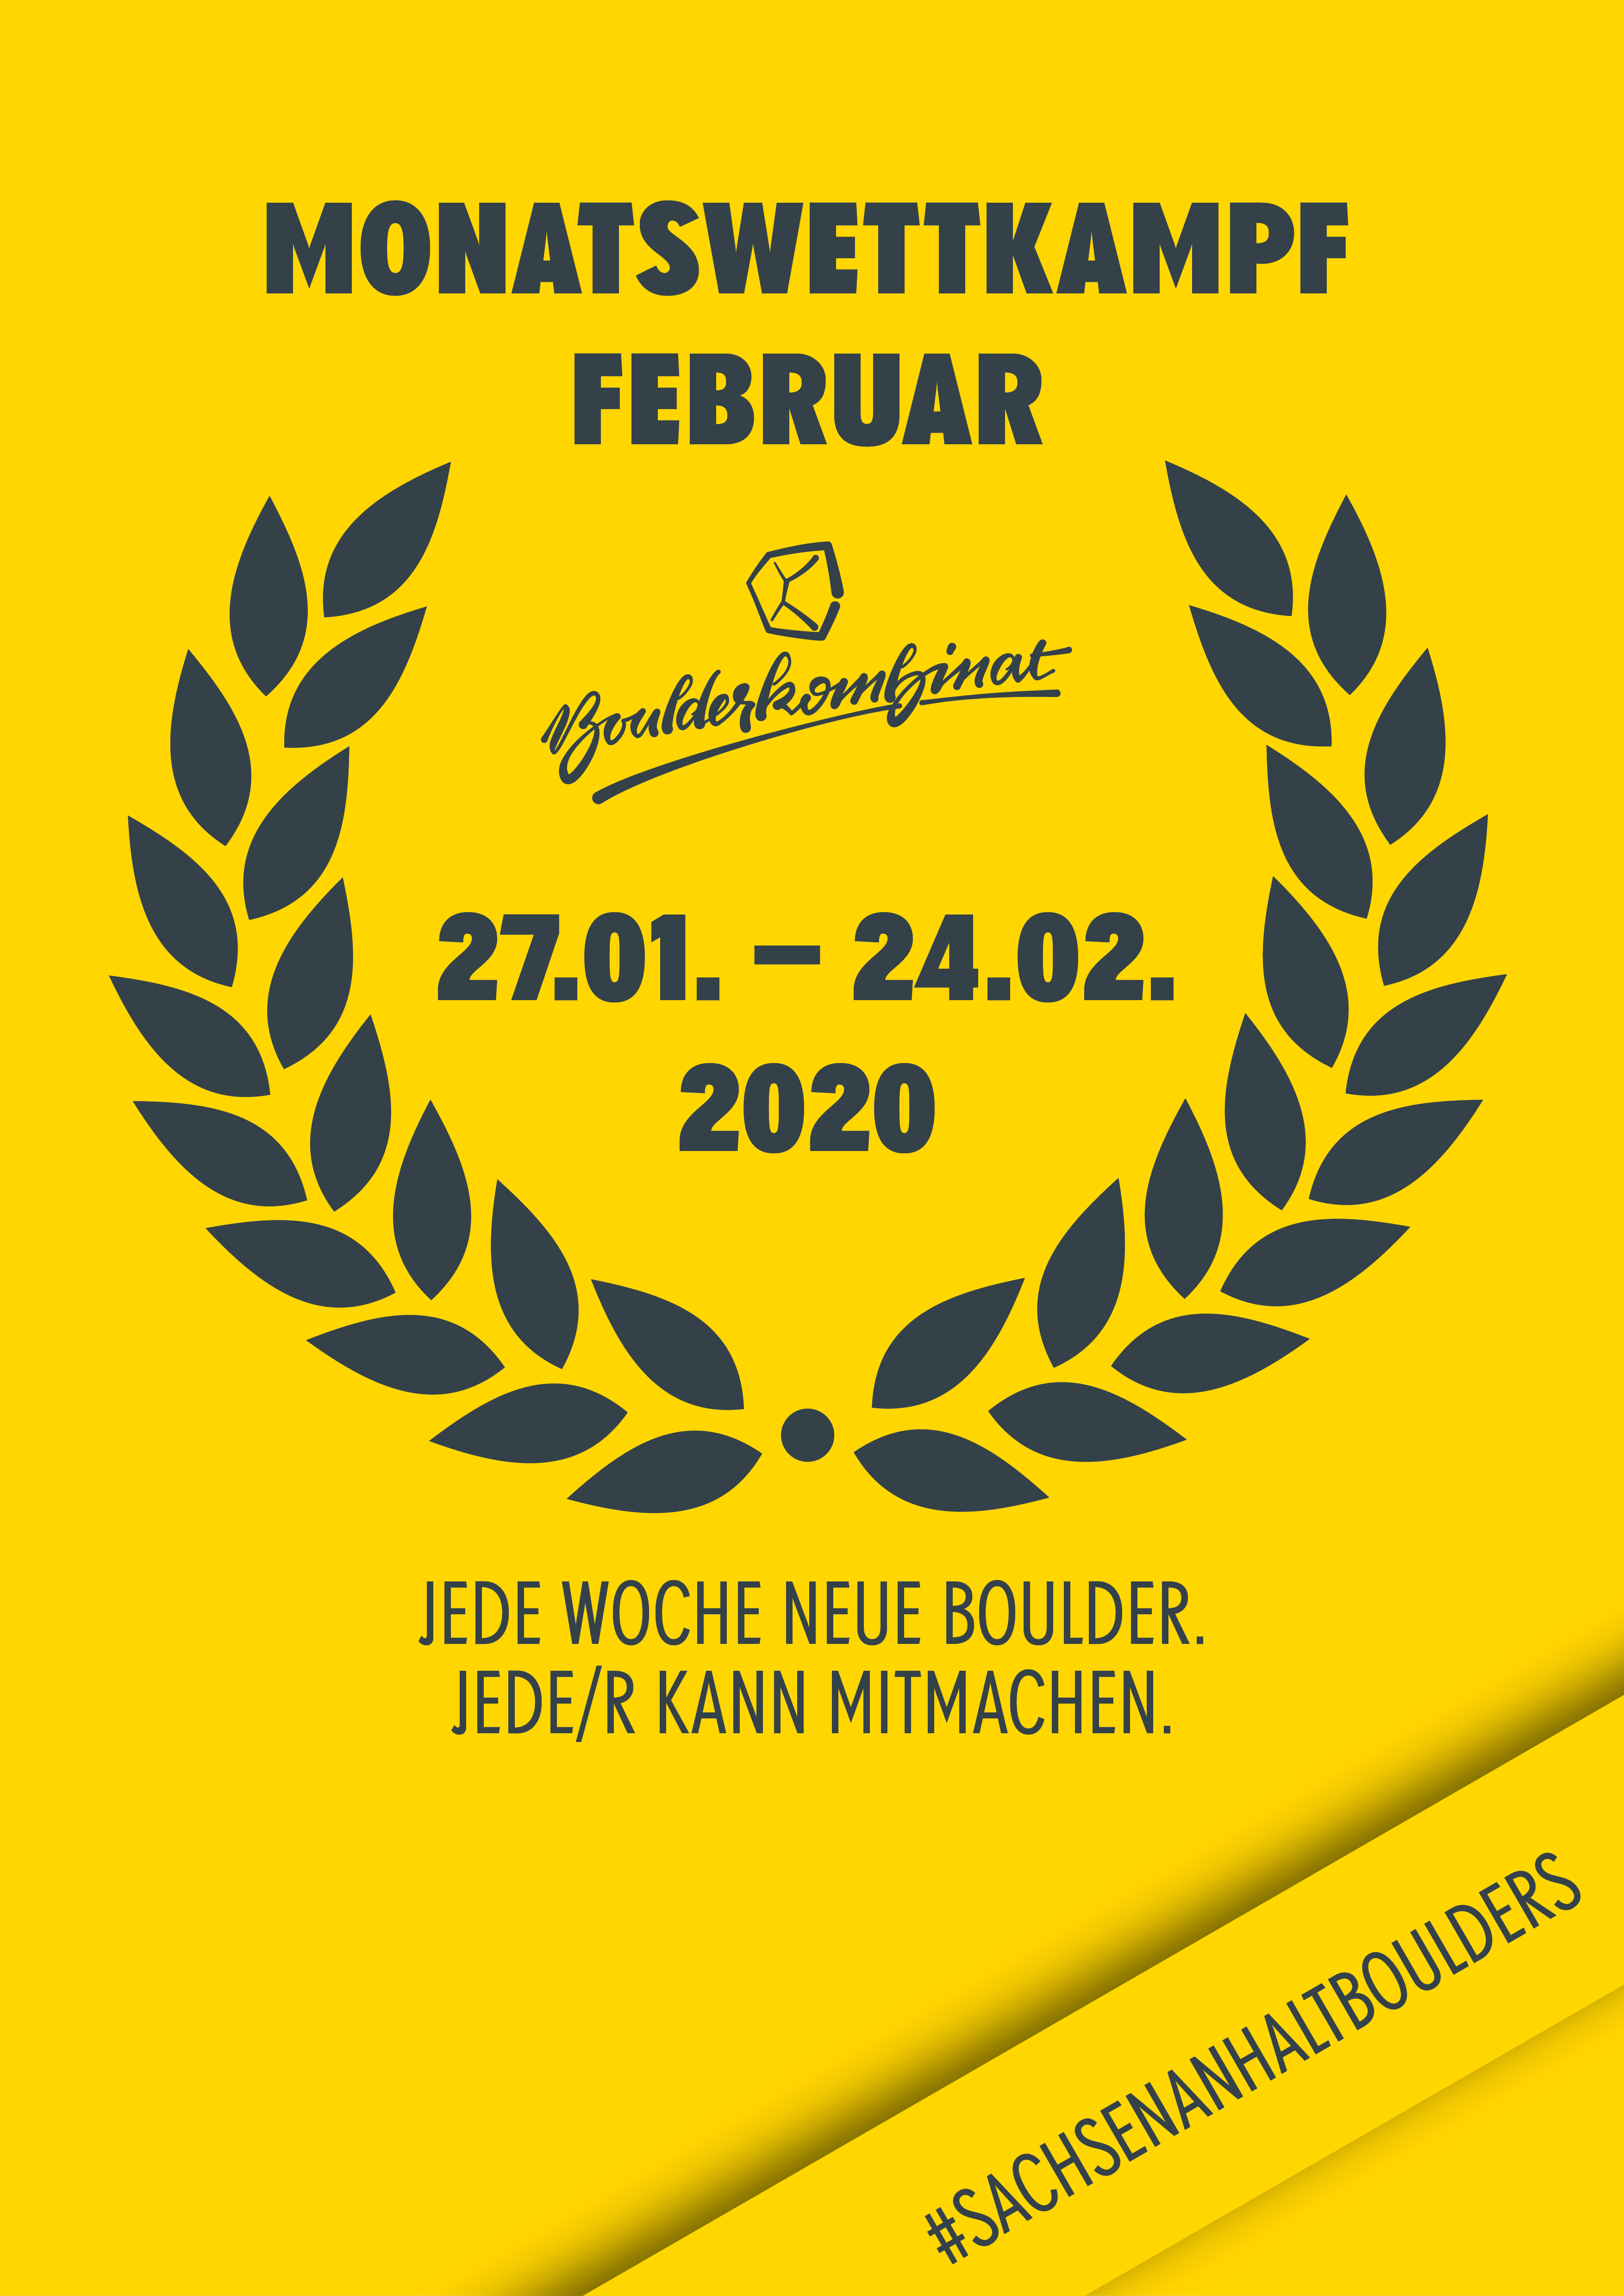 Poster for Boulderkombinat Monatswettkampf 2020-02